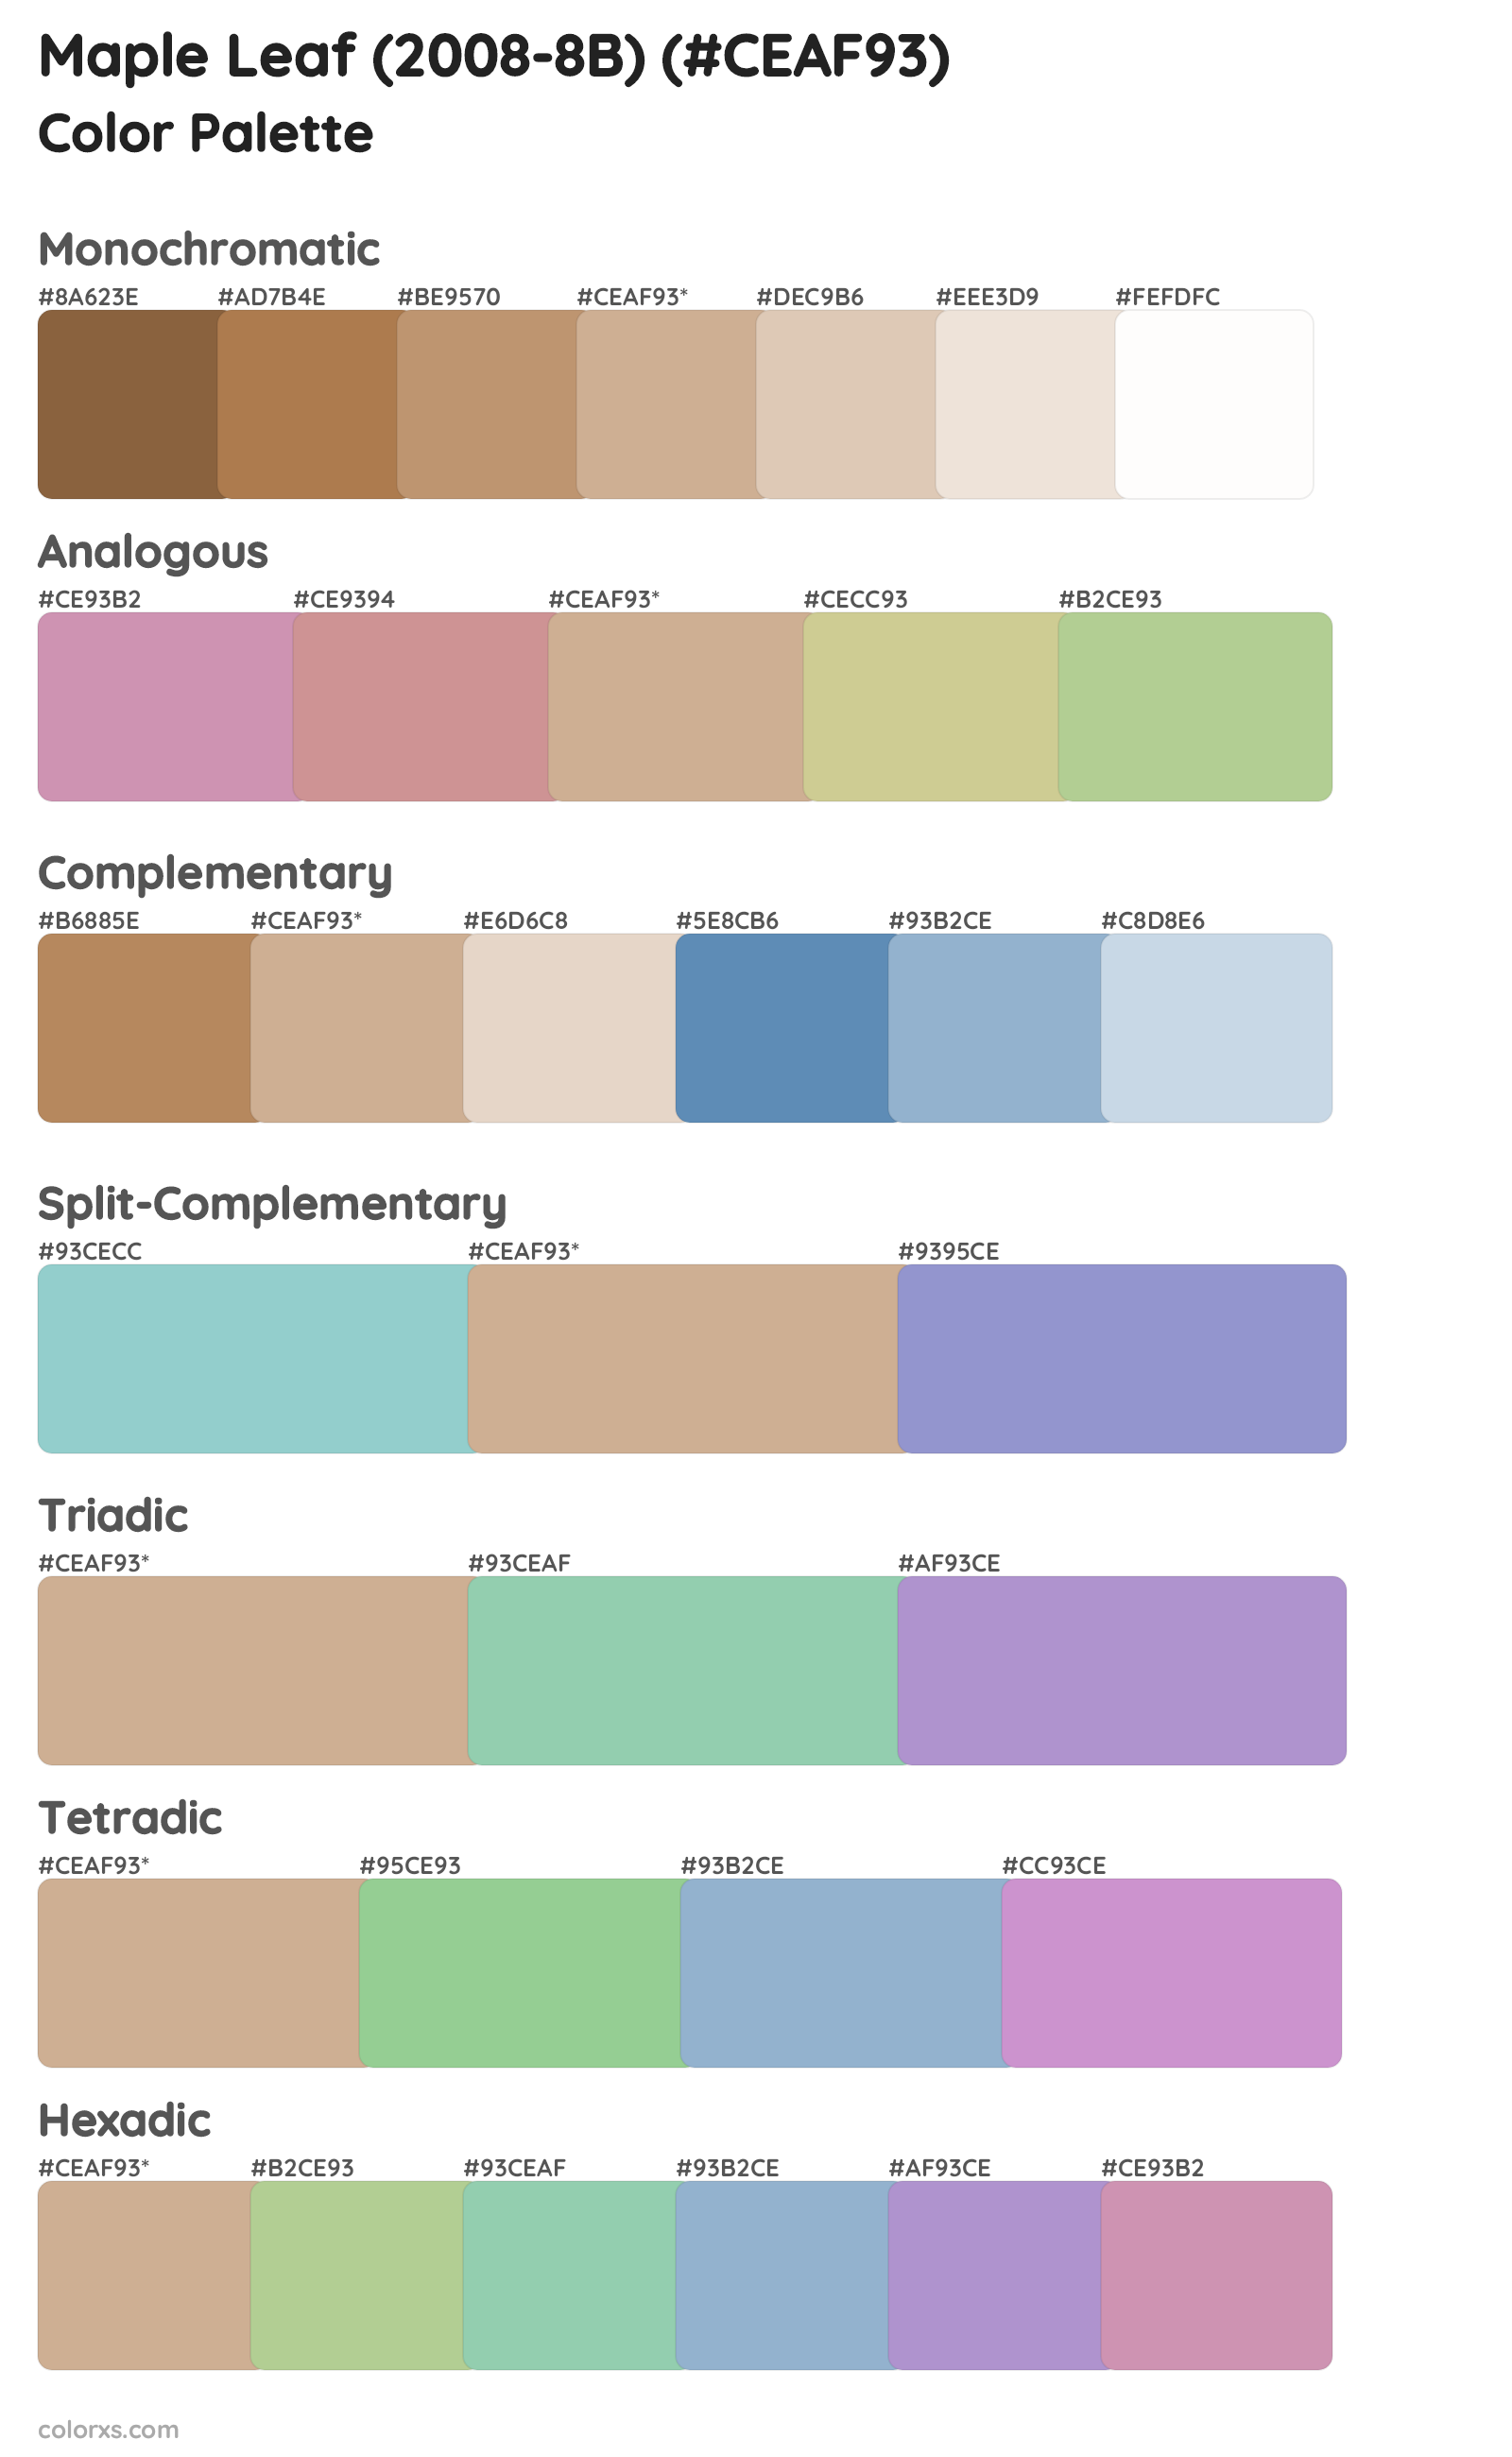 Maple Leaf (2008-8B) Color Scheme Palettes